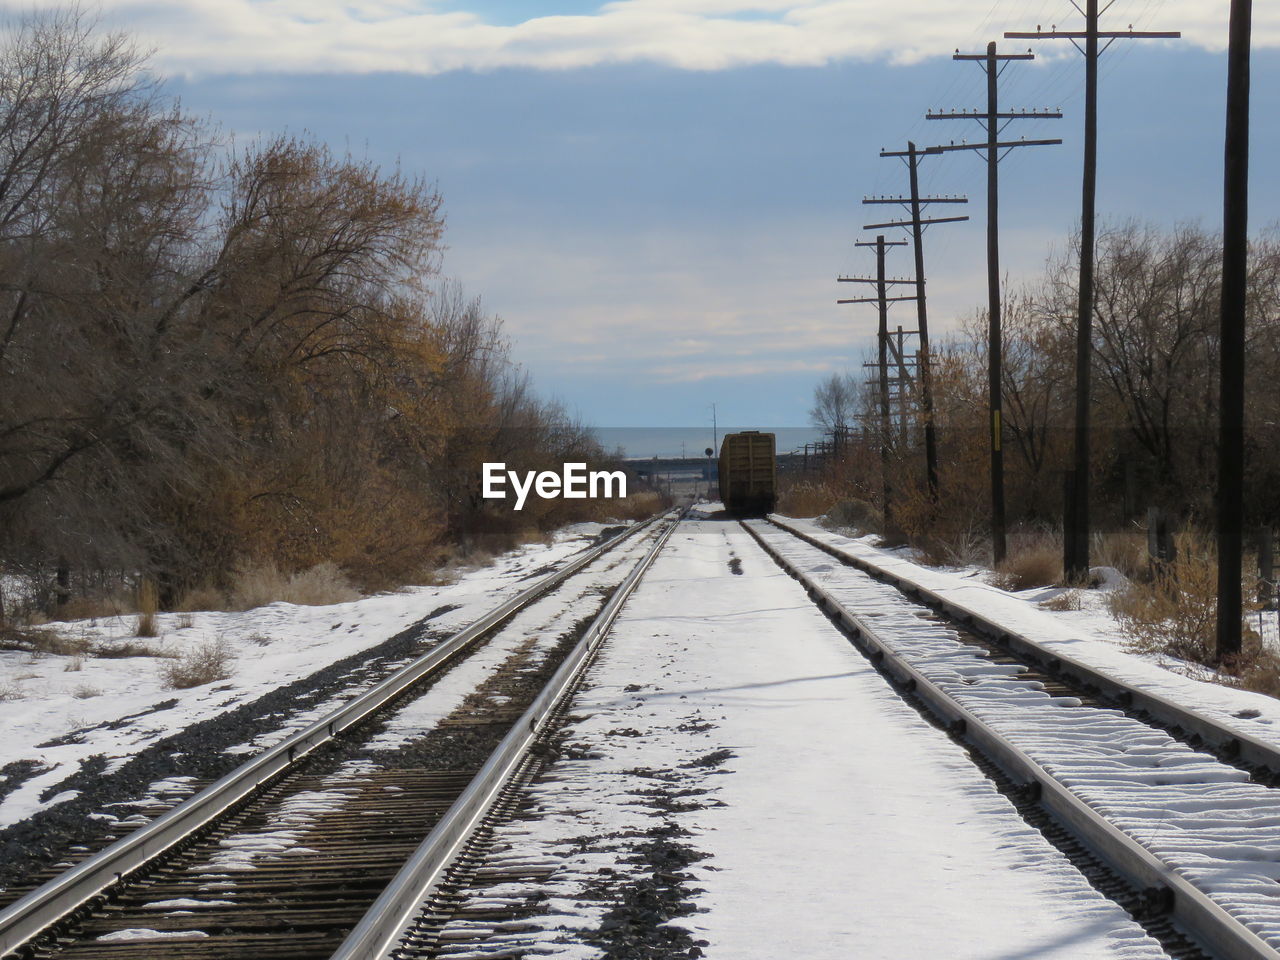 Railroad tracks in winter